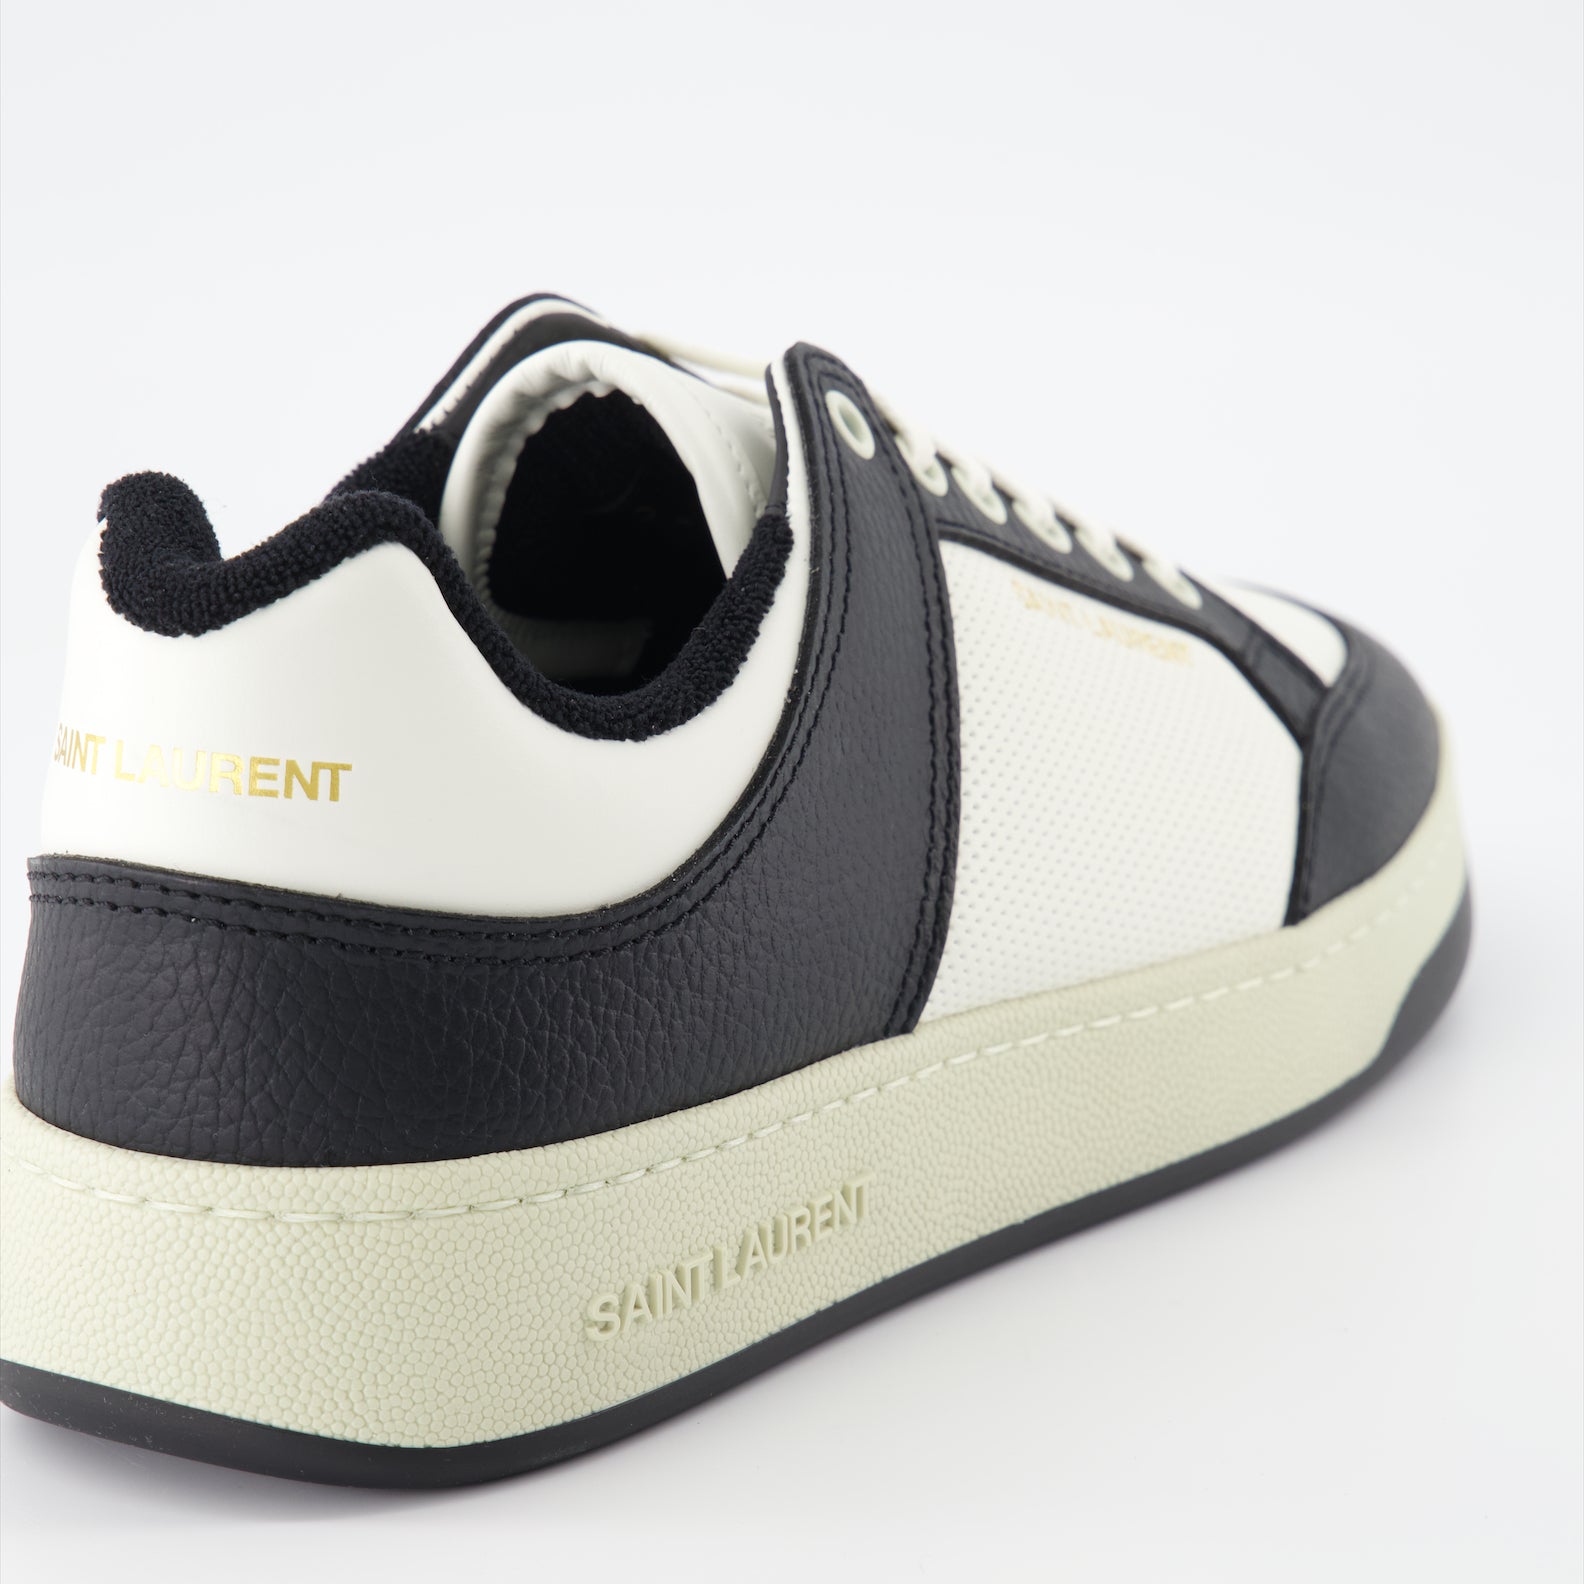 SL/61 sneakers